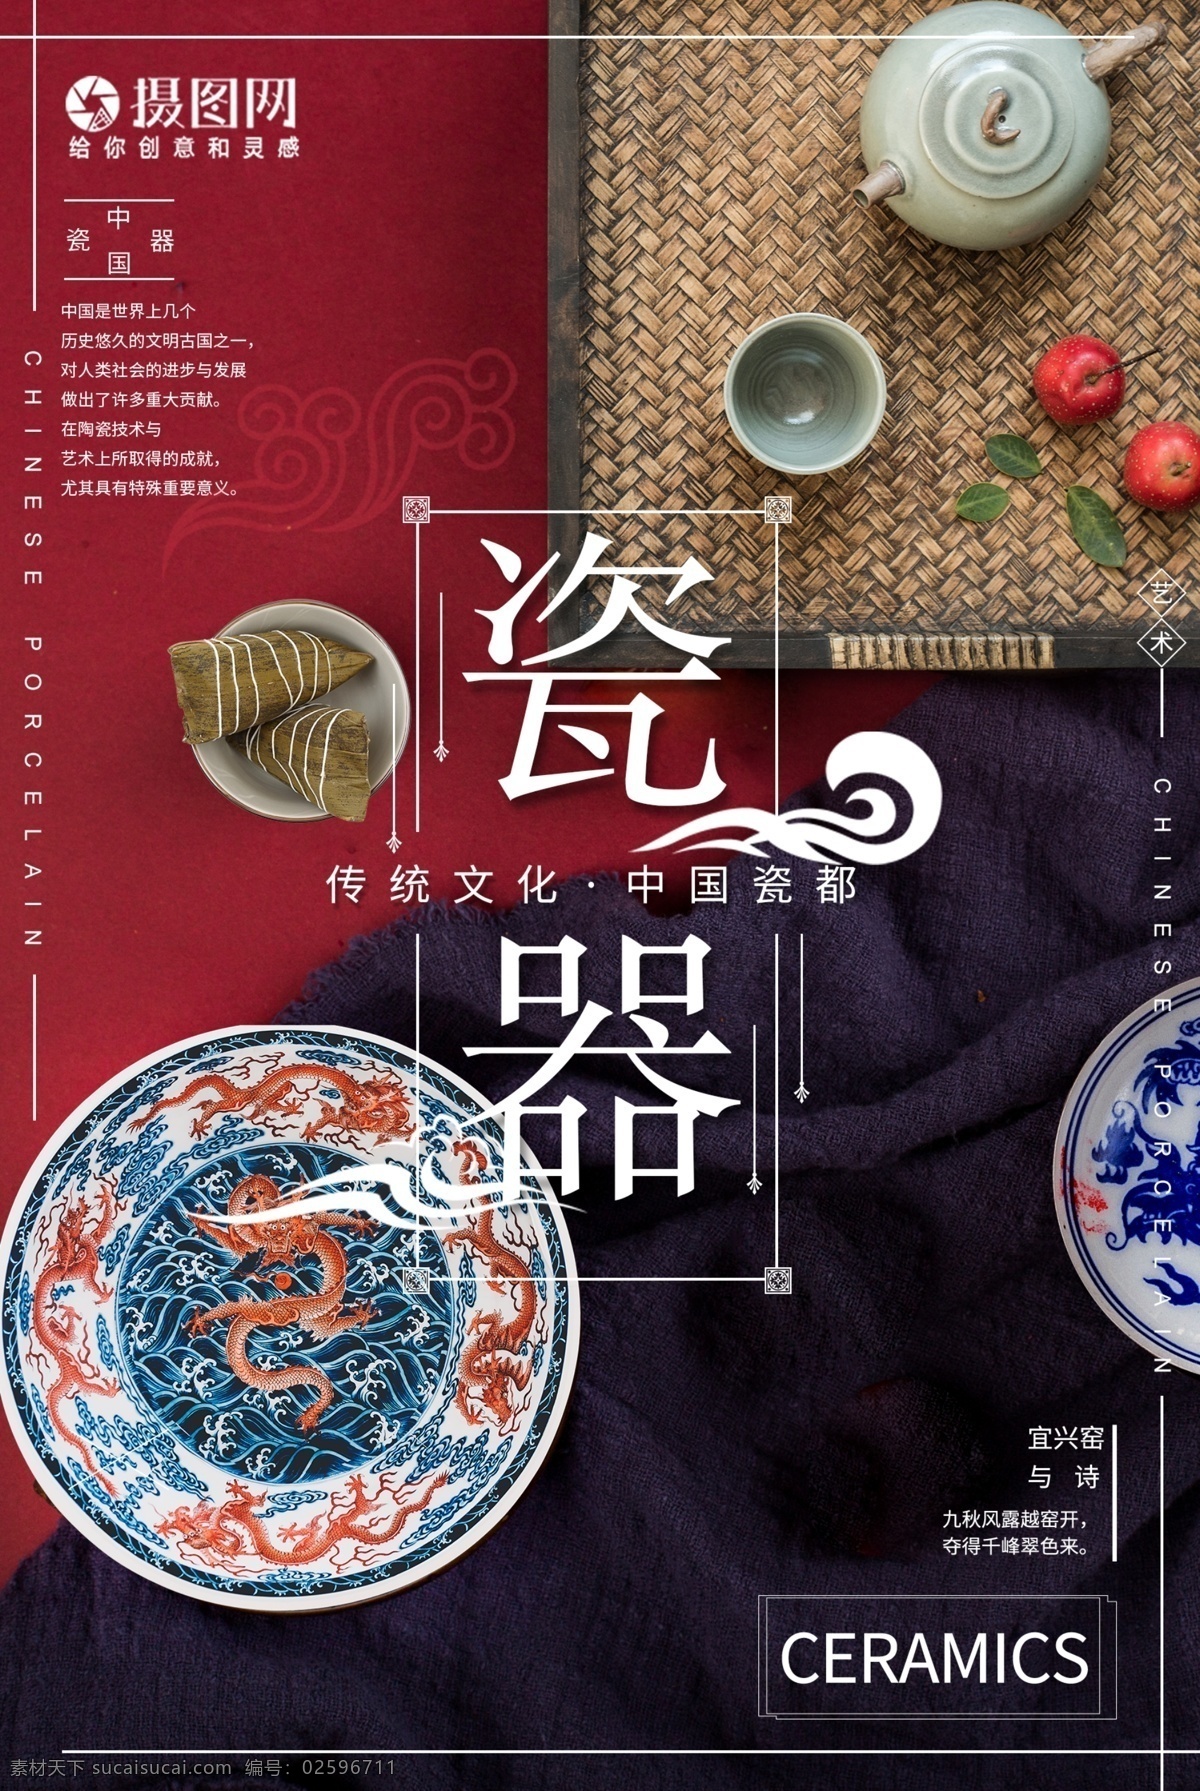 中国 艺术 传统文化 青花瓷 海报 艺术瓷器 陶瓷 中国传统文化 中国风 文雅海报 艺术品 陶艺 非遗